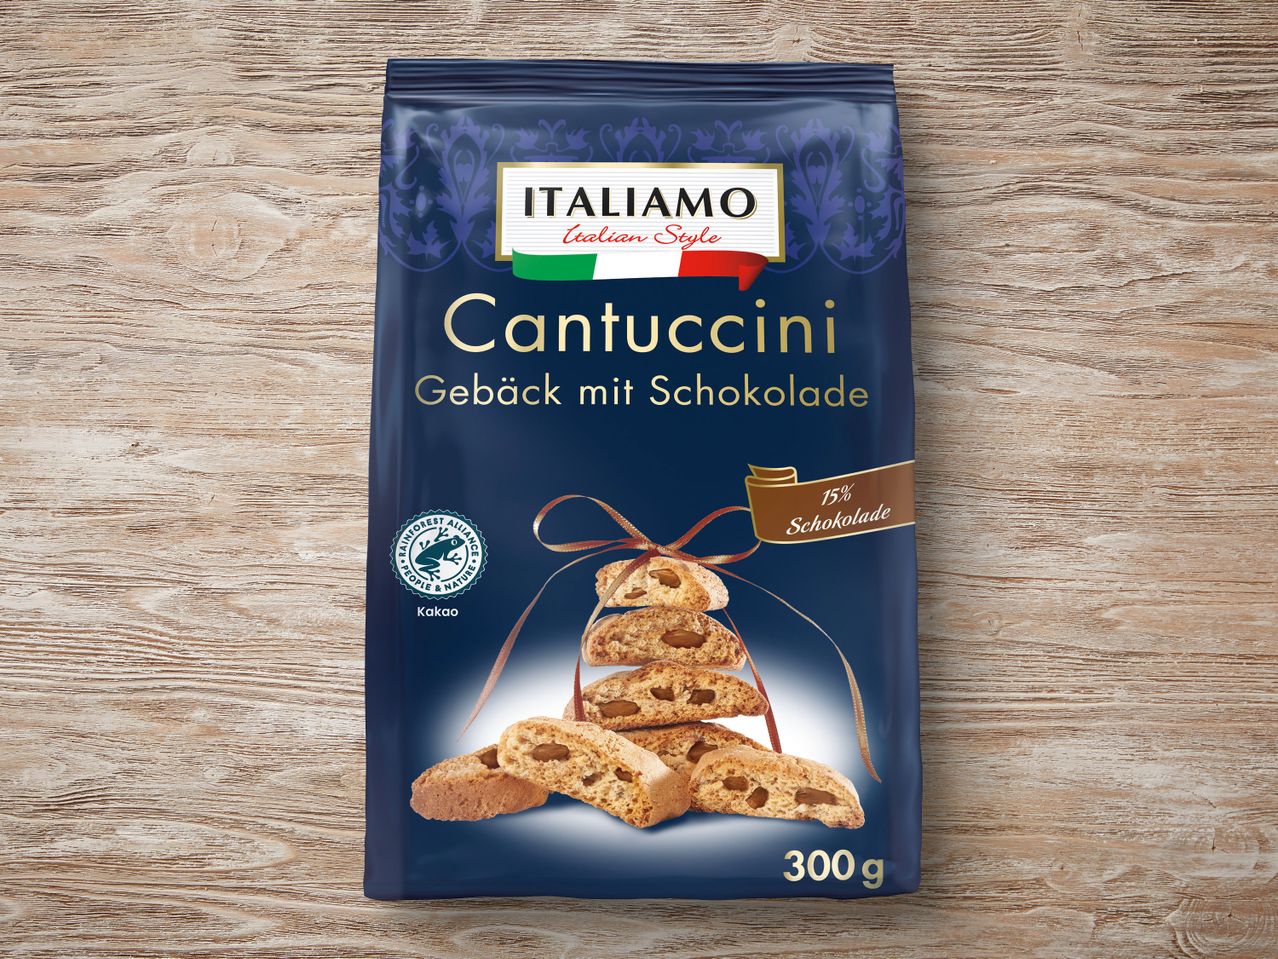 Italiamo Cantuccini